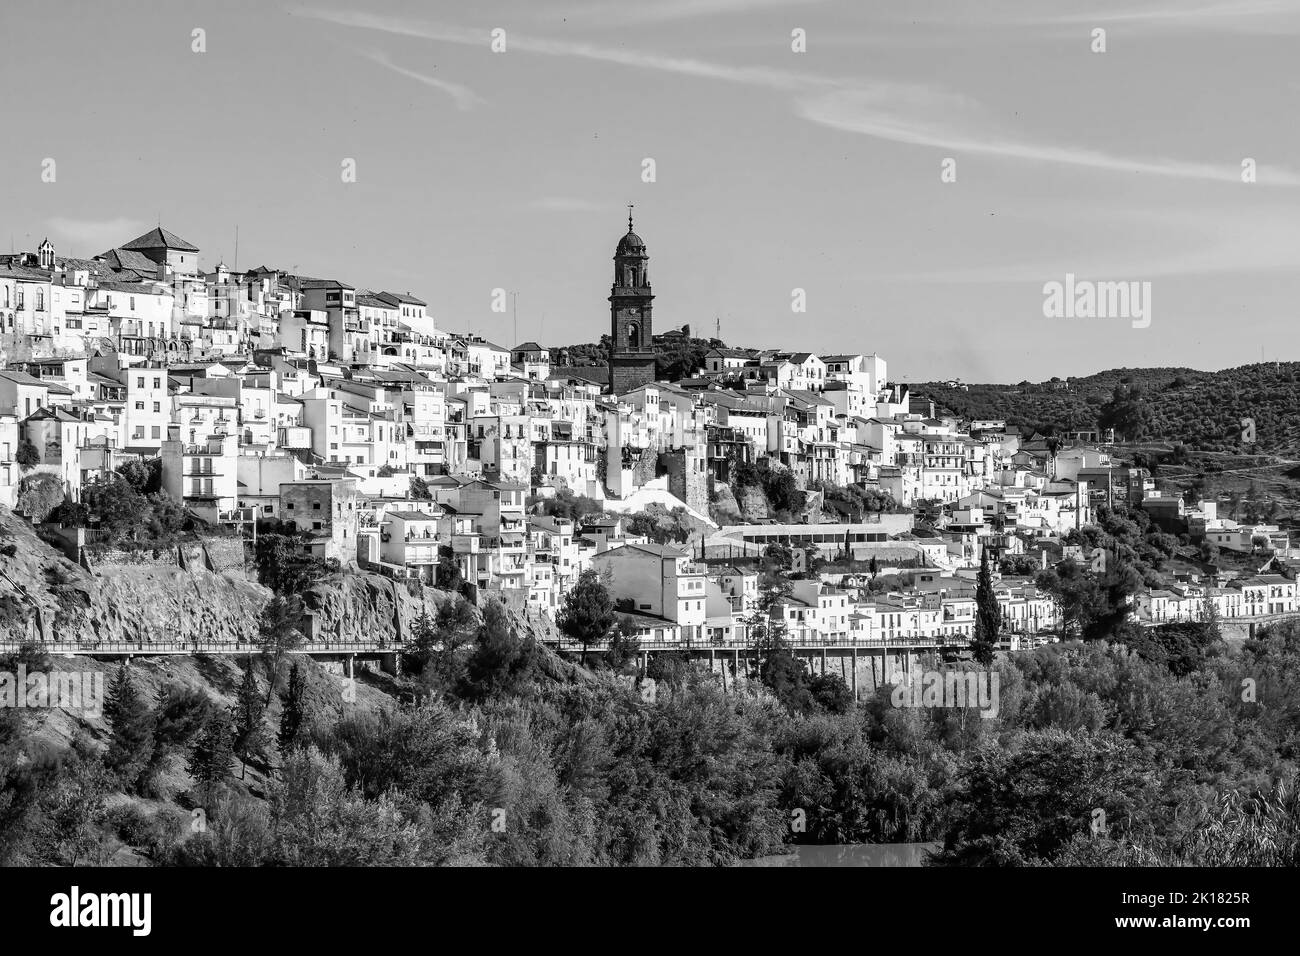 Vista del pueblo de Montoro, ciudad y municipio de la provincia de Córdoba, España, en la Comunidad Autónoma de Andalucía. En blanco y negro Foto de stock